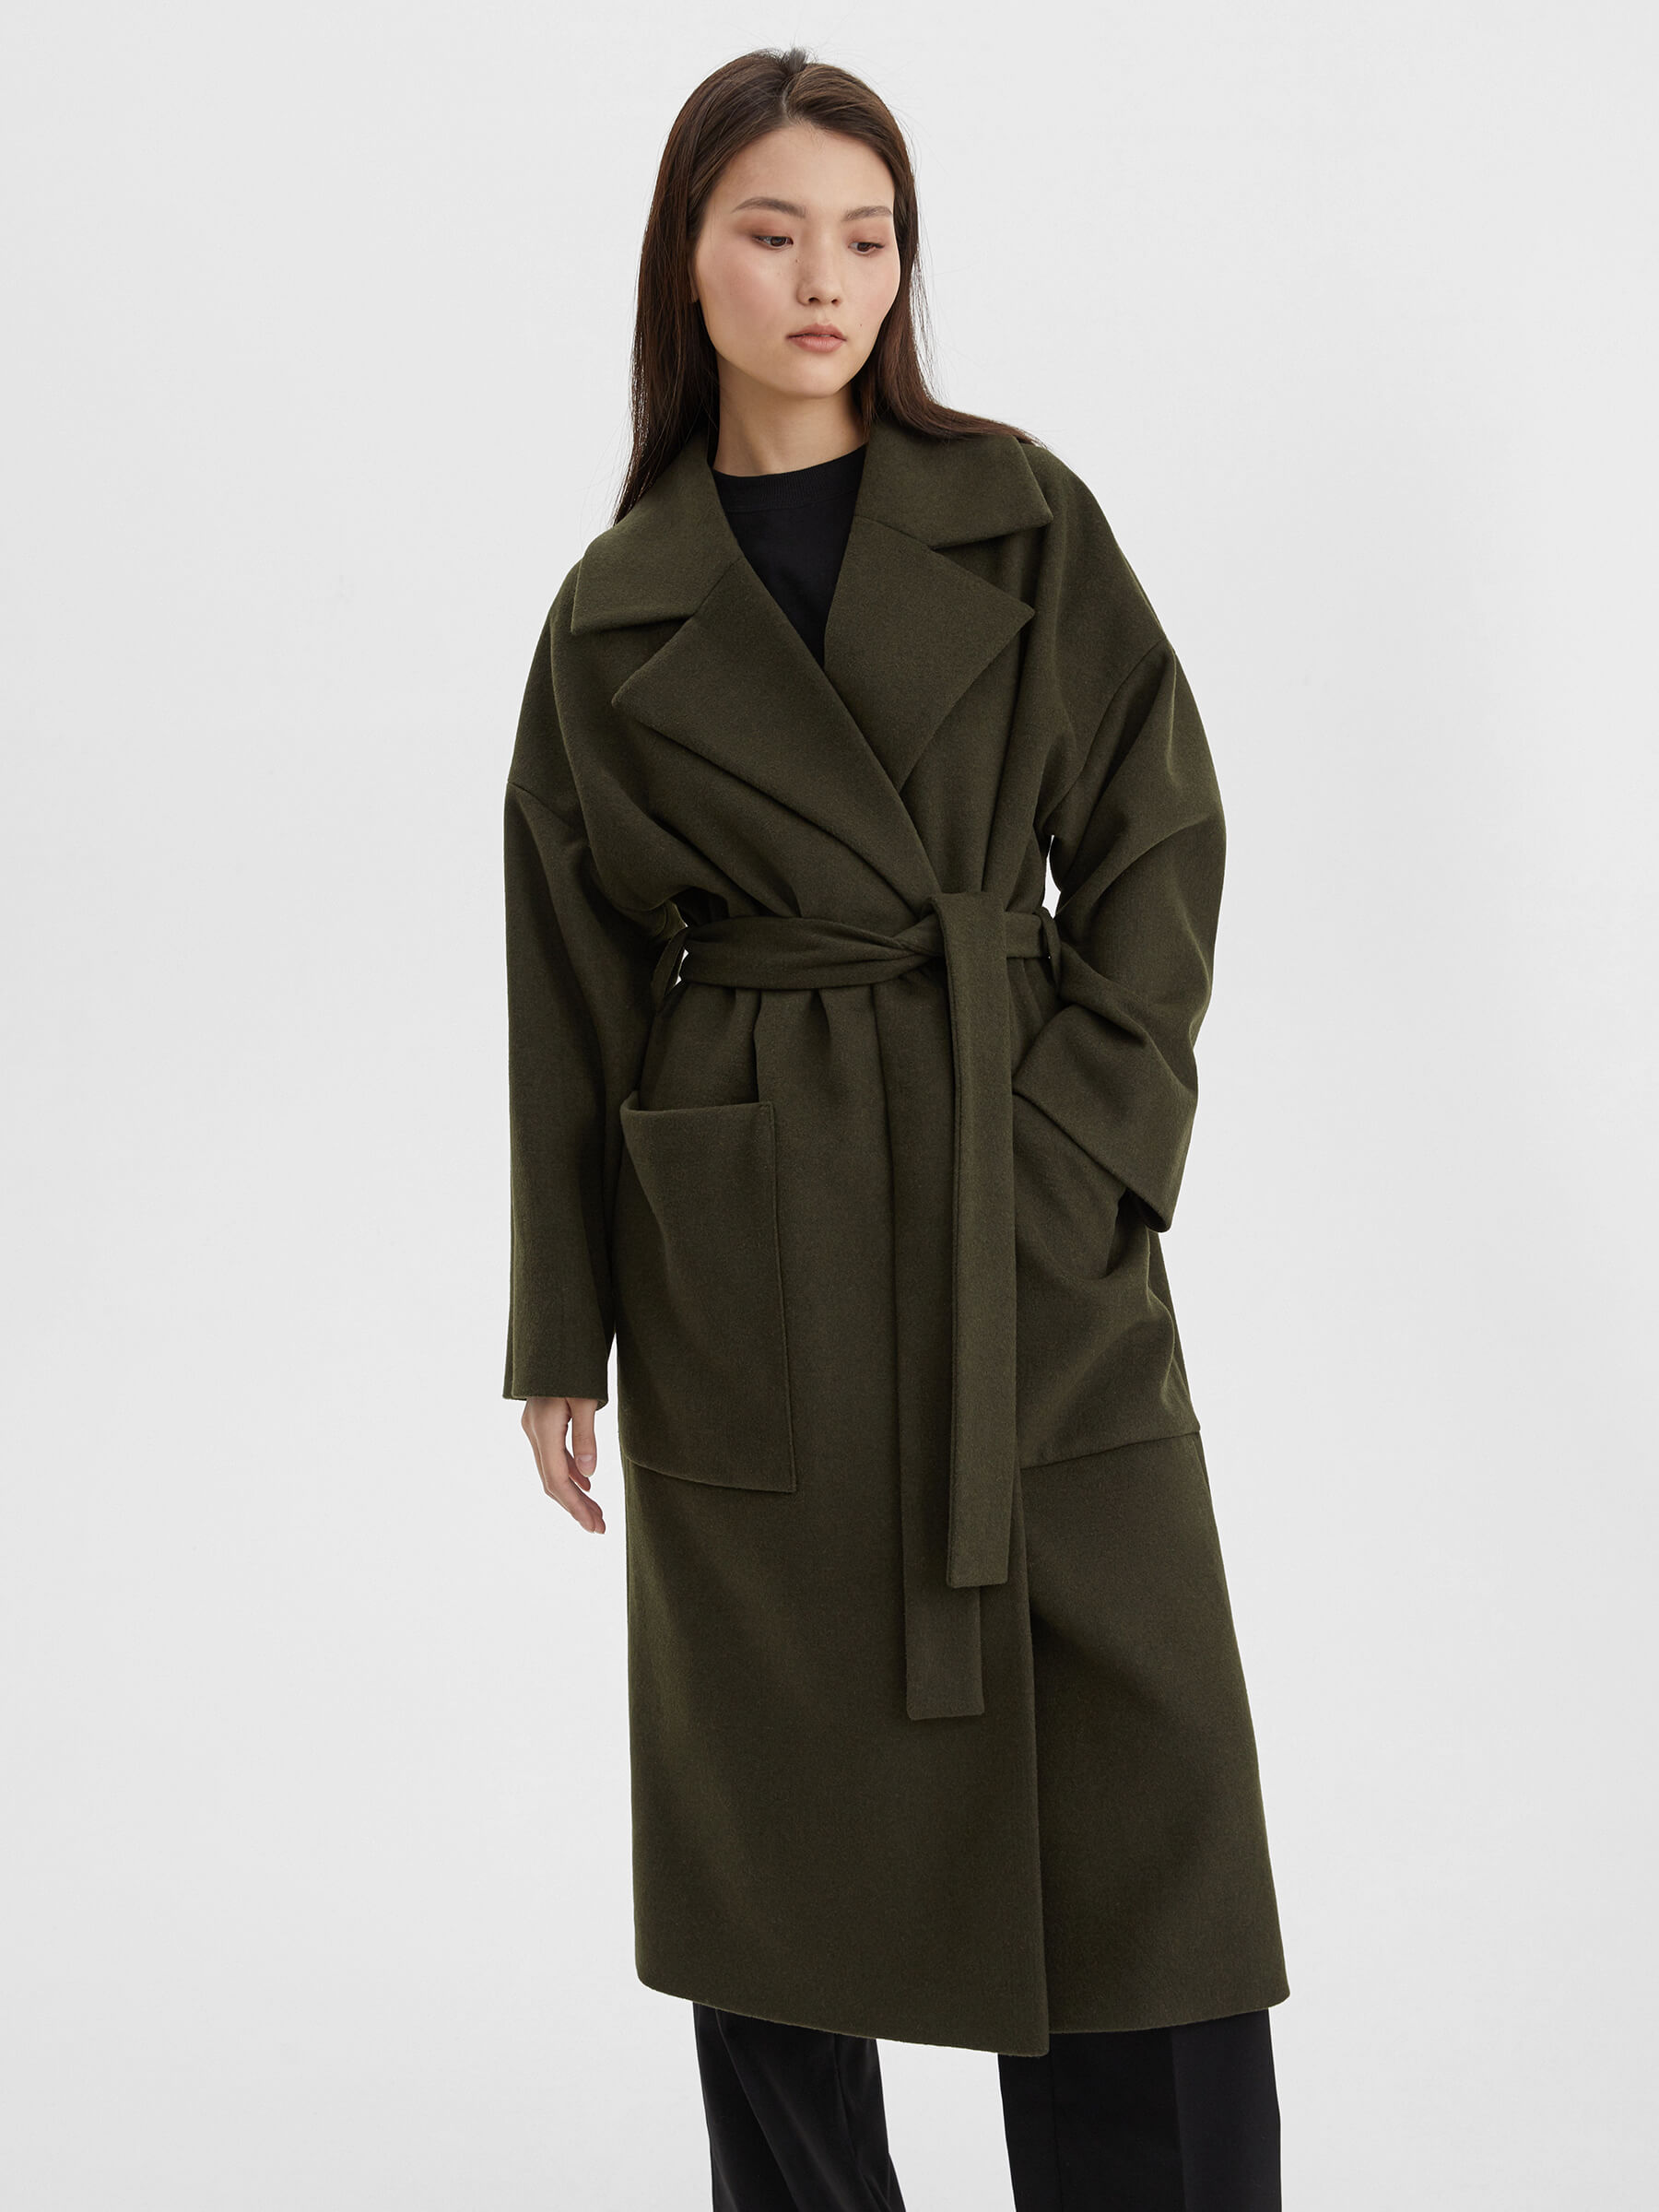 Пальто женское длинное с объемными карманами и поясом, цвет – хаки женское шерстяное пальто с поясом теплое двубортное пальто средней длины с отложным воротником в корейском стиле осень зима 2021